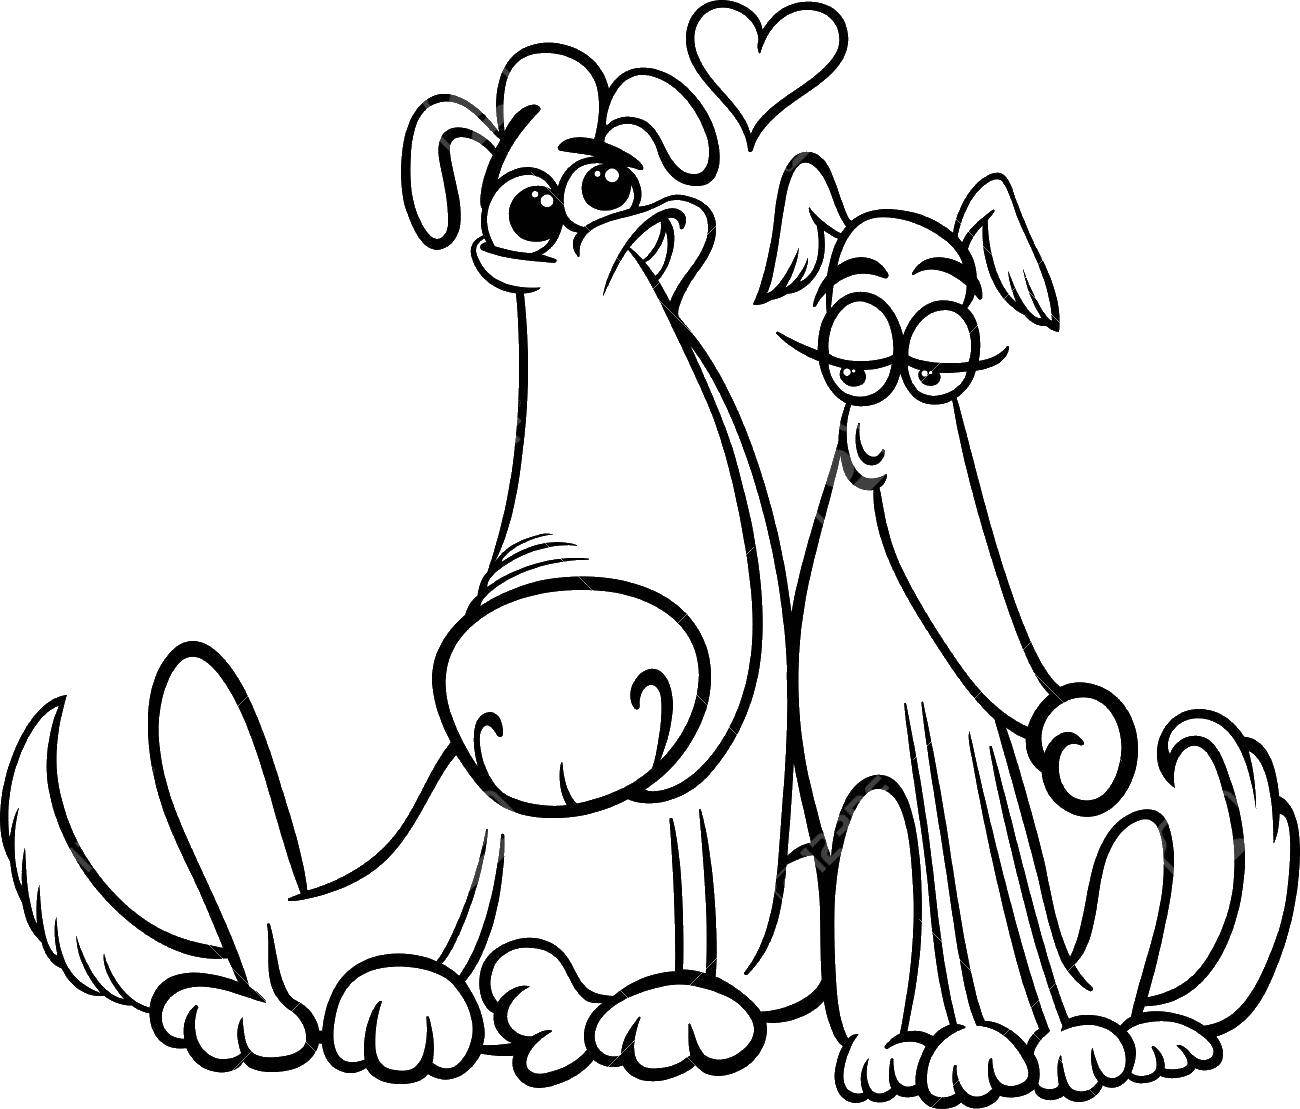 Название: Раскраска Влюбленные собаки. Категория: День святого валентина. Теги: День святого валентина, собаки.